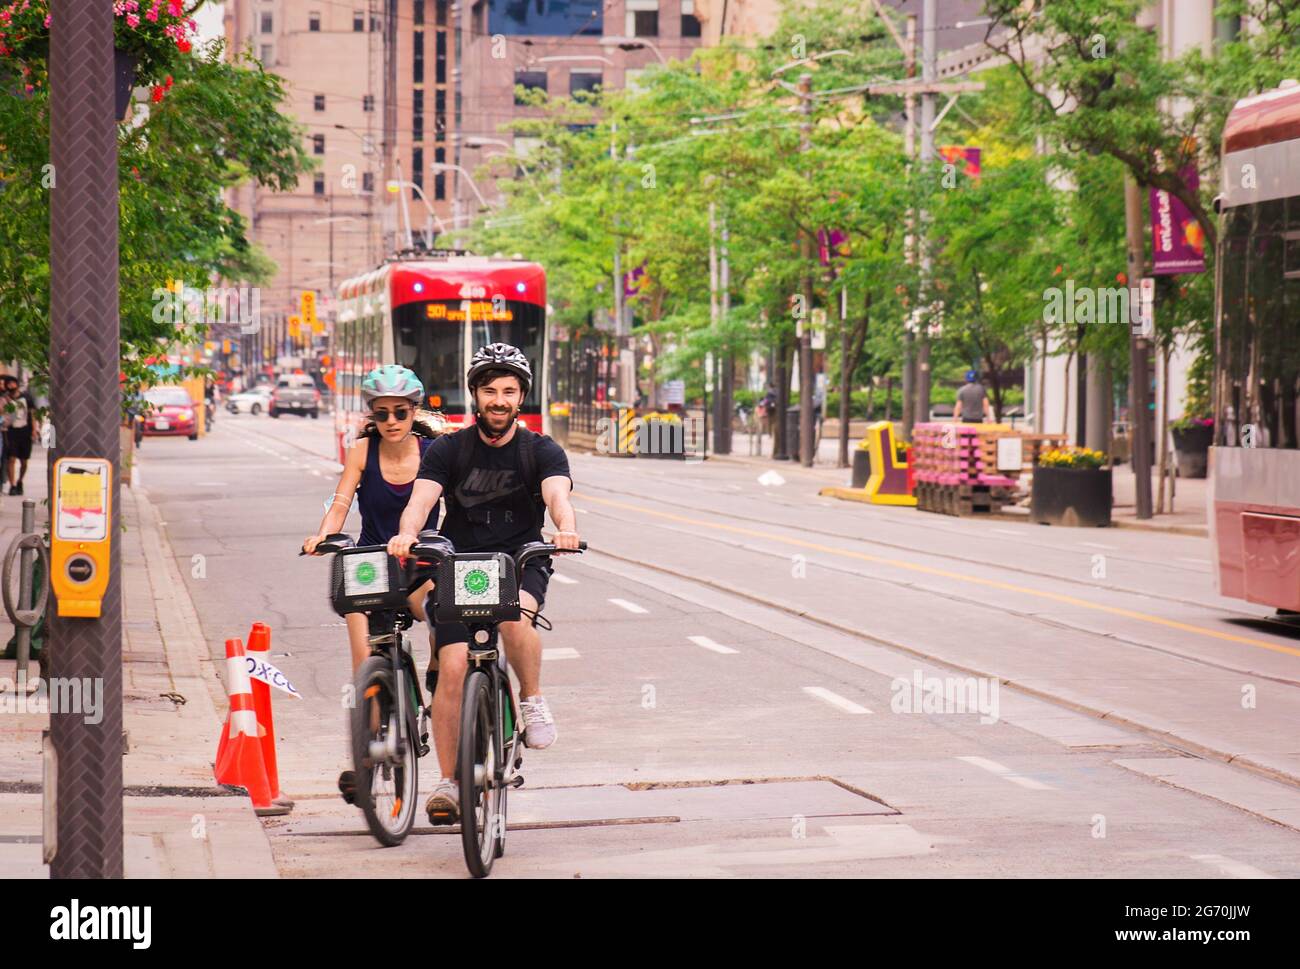 TORONTO, CANADÁ - 06 05 2021: Los Torontonianos disfrutan del servicio de  compartir bicicletas. Después de una larga cuarentena montar en bicicleta  es un buen ejercicio y muchos lo eligieron Fotografía de stock - Alamy